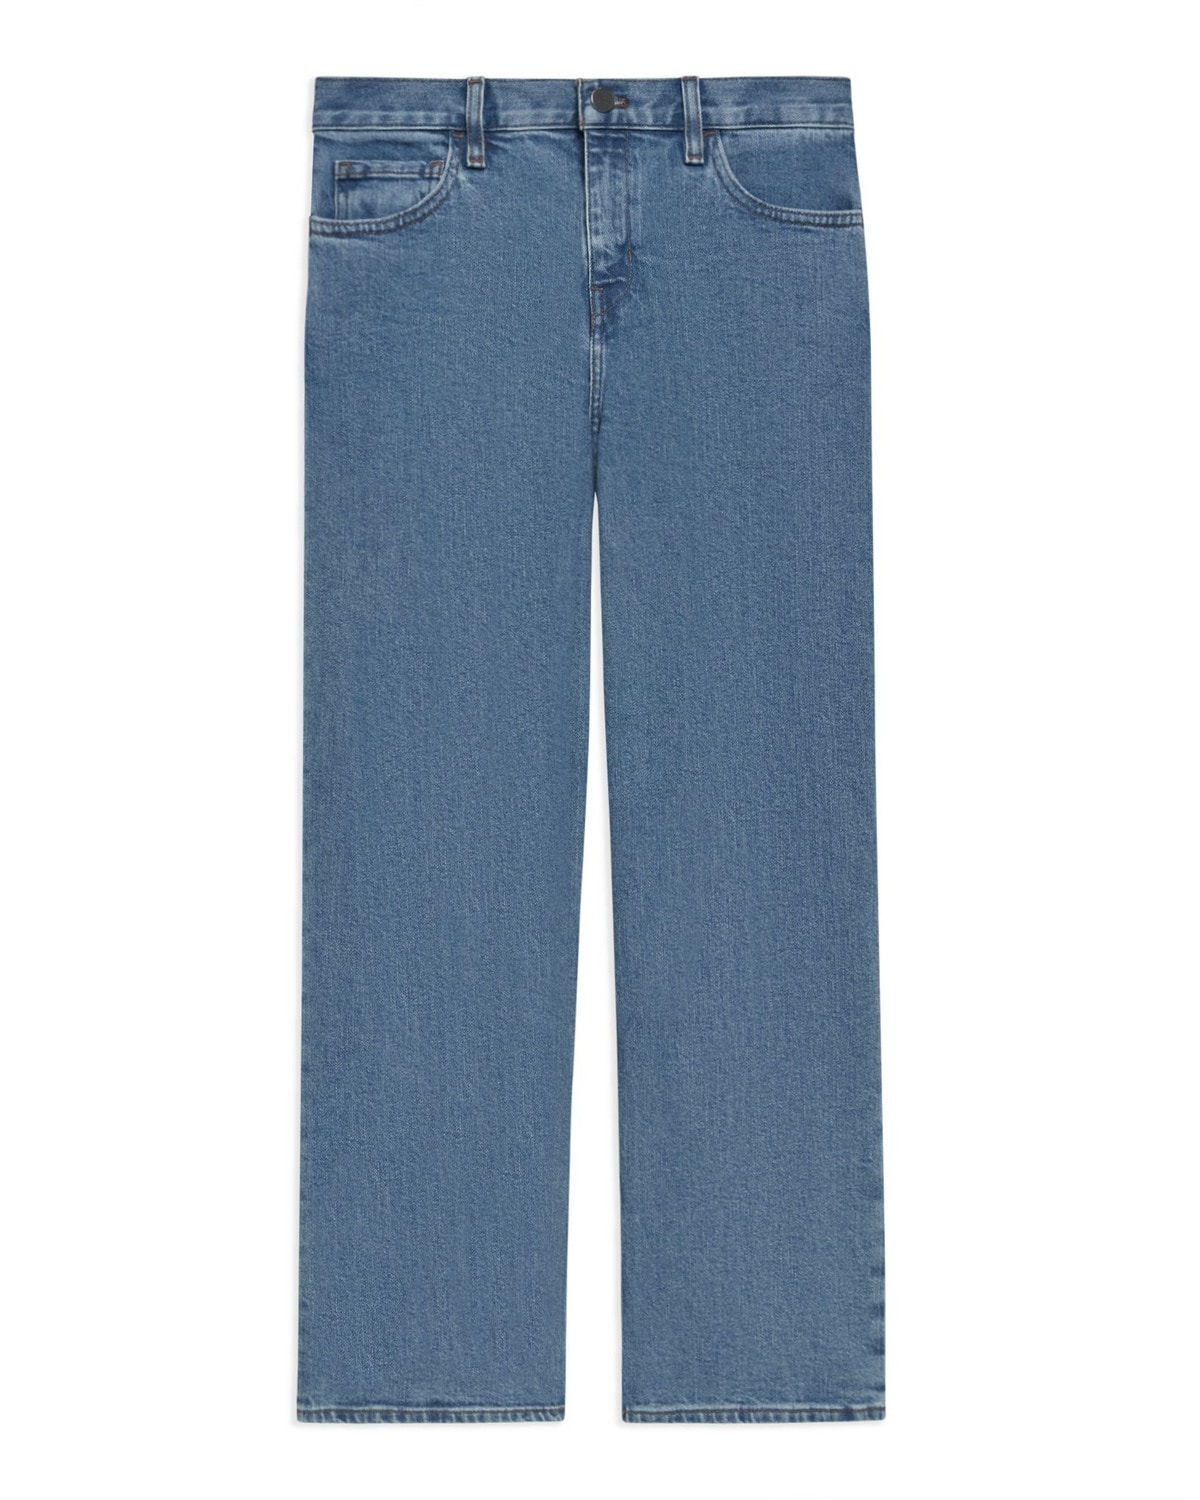 Wide Crop Jean in Washed Denim